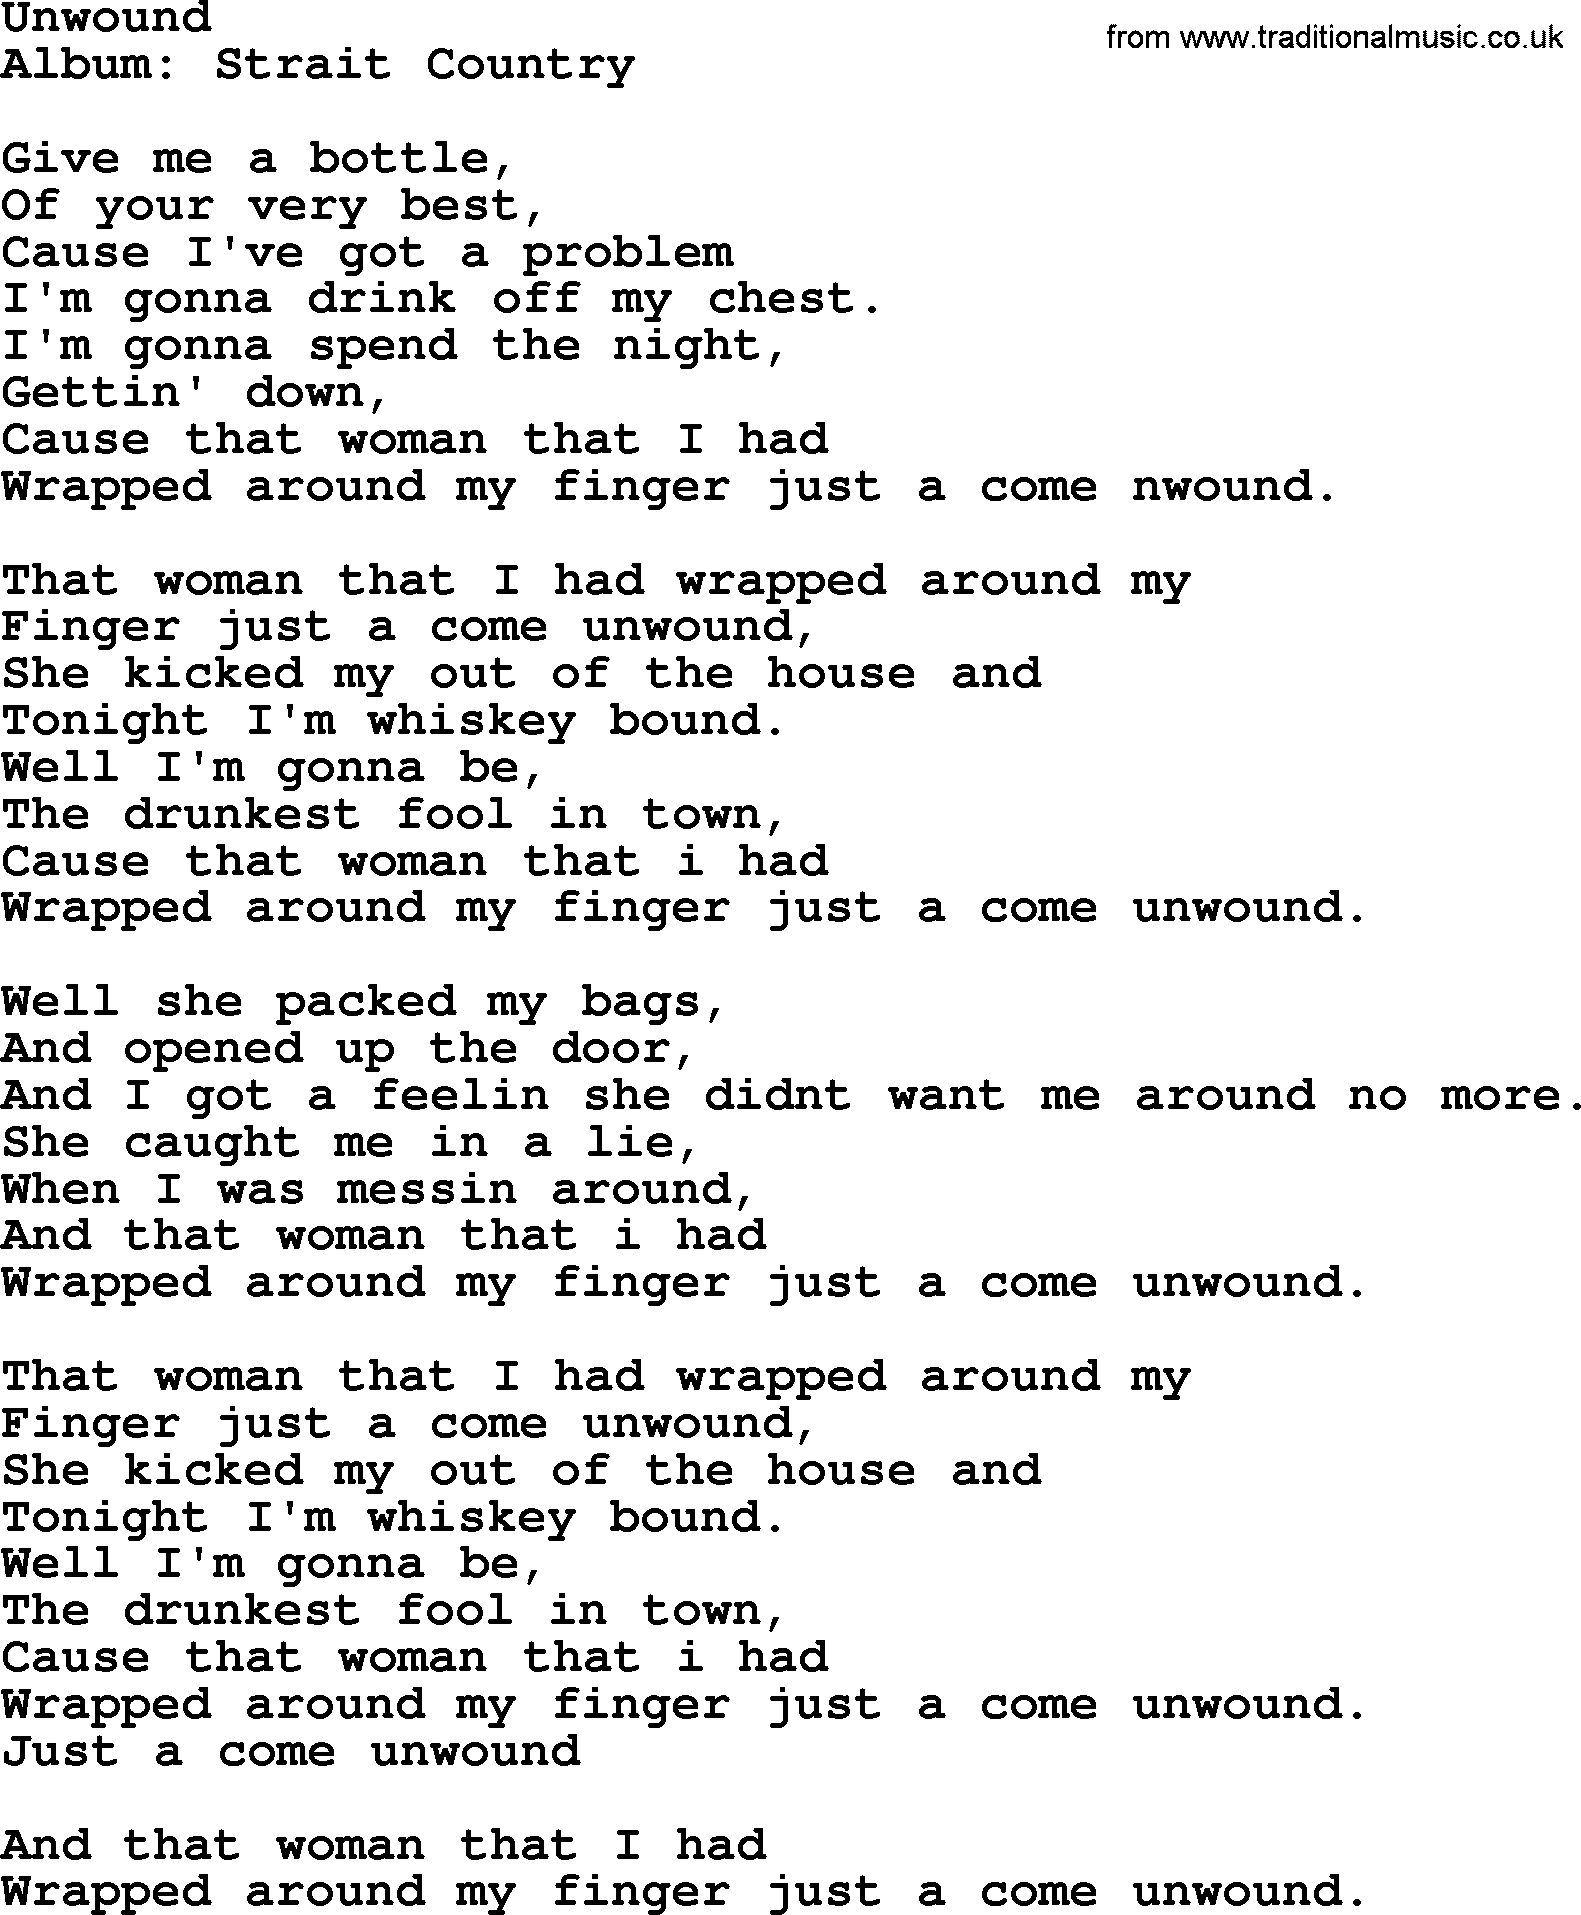 George Strait song: Unwound, lyrics